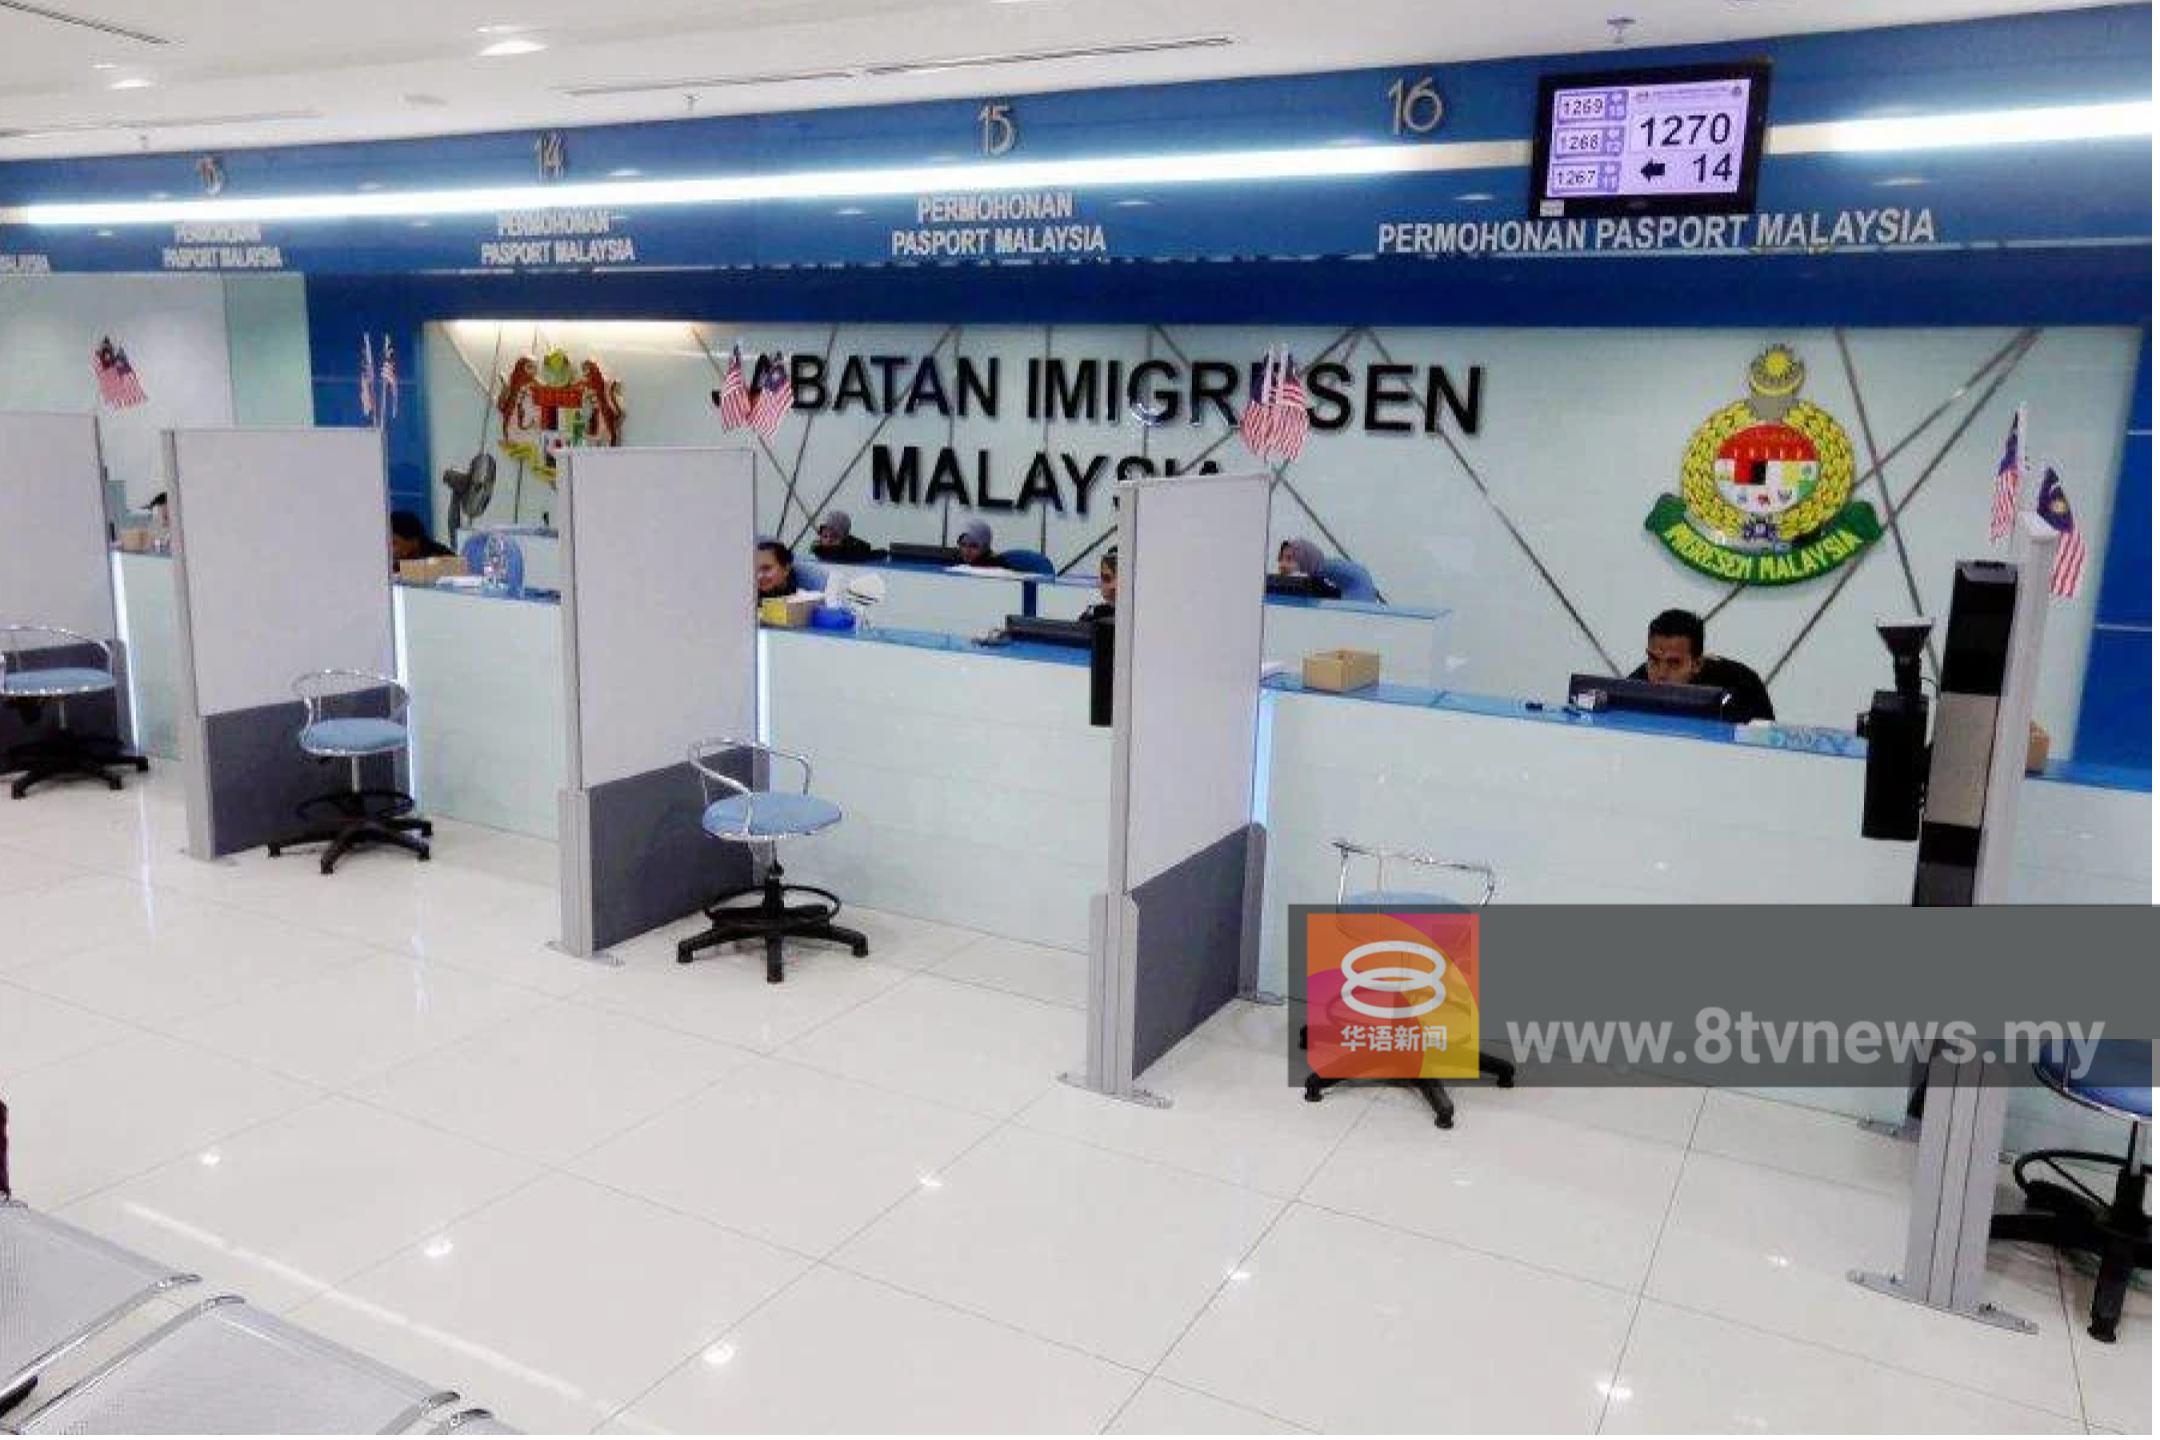 “因为这里是马来西亚!” 华妇不谙马来语更新护照遭拒